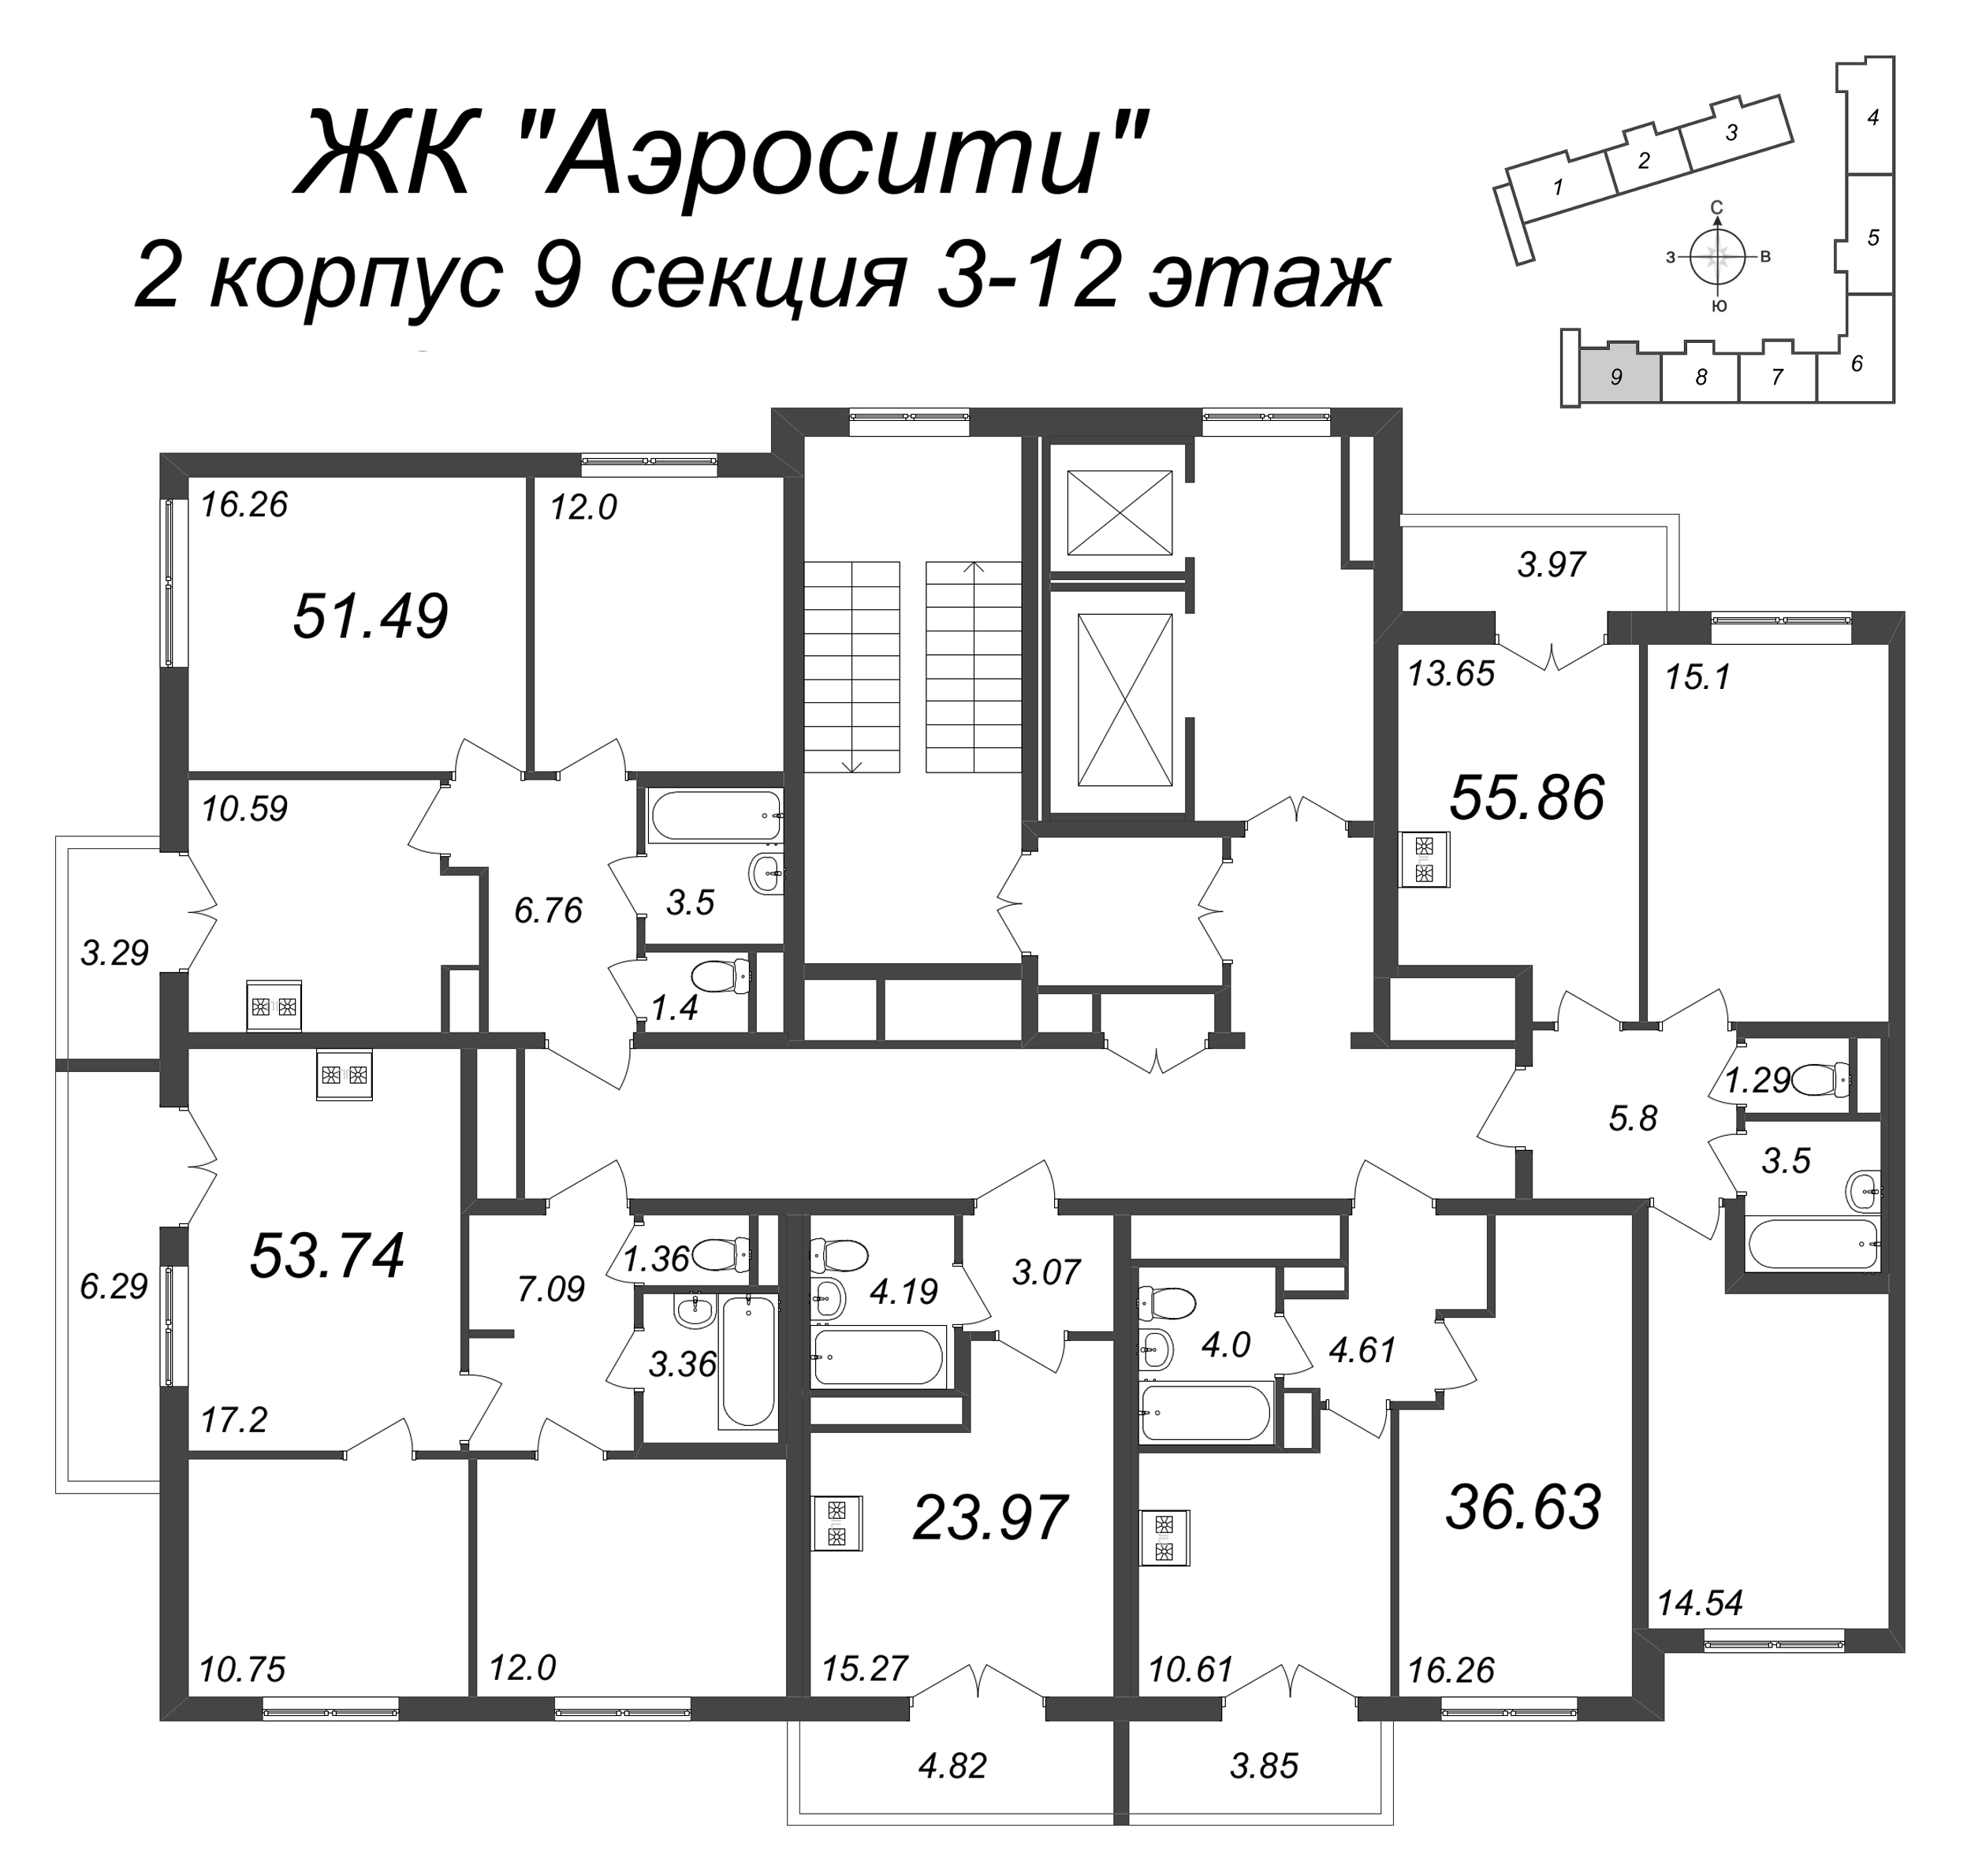 2-комнатная квартира, 55.86 м² в ЖК "AEROCITY" - планировка этажа